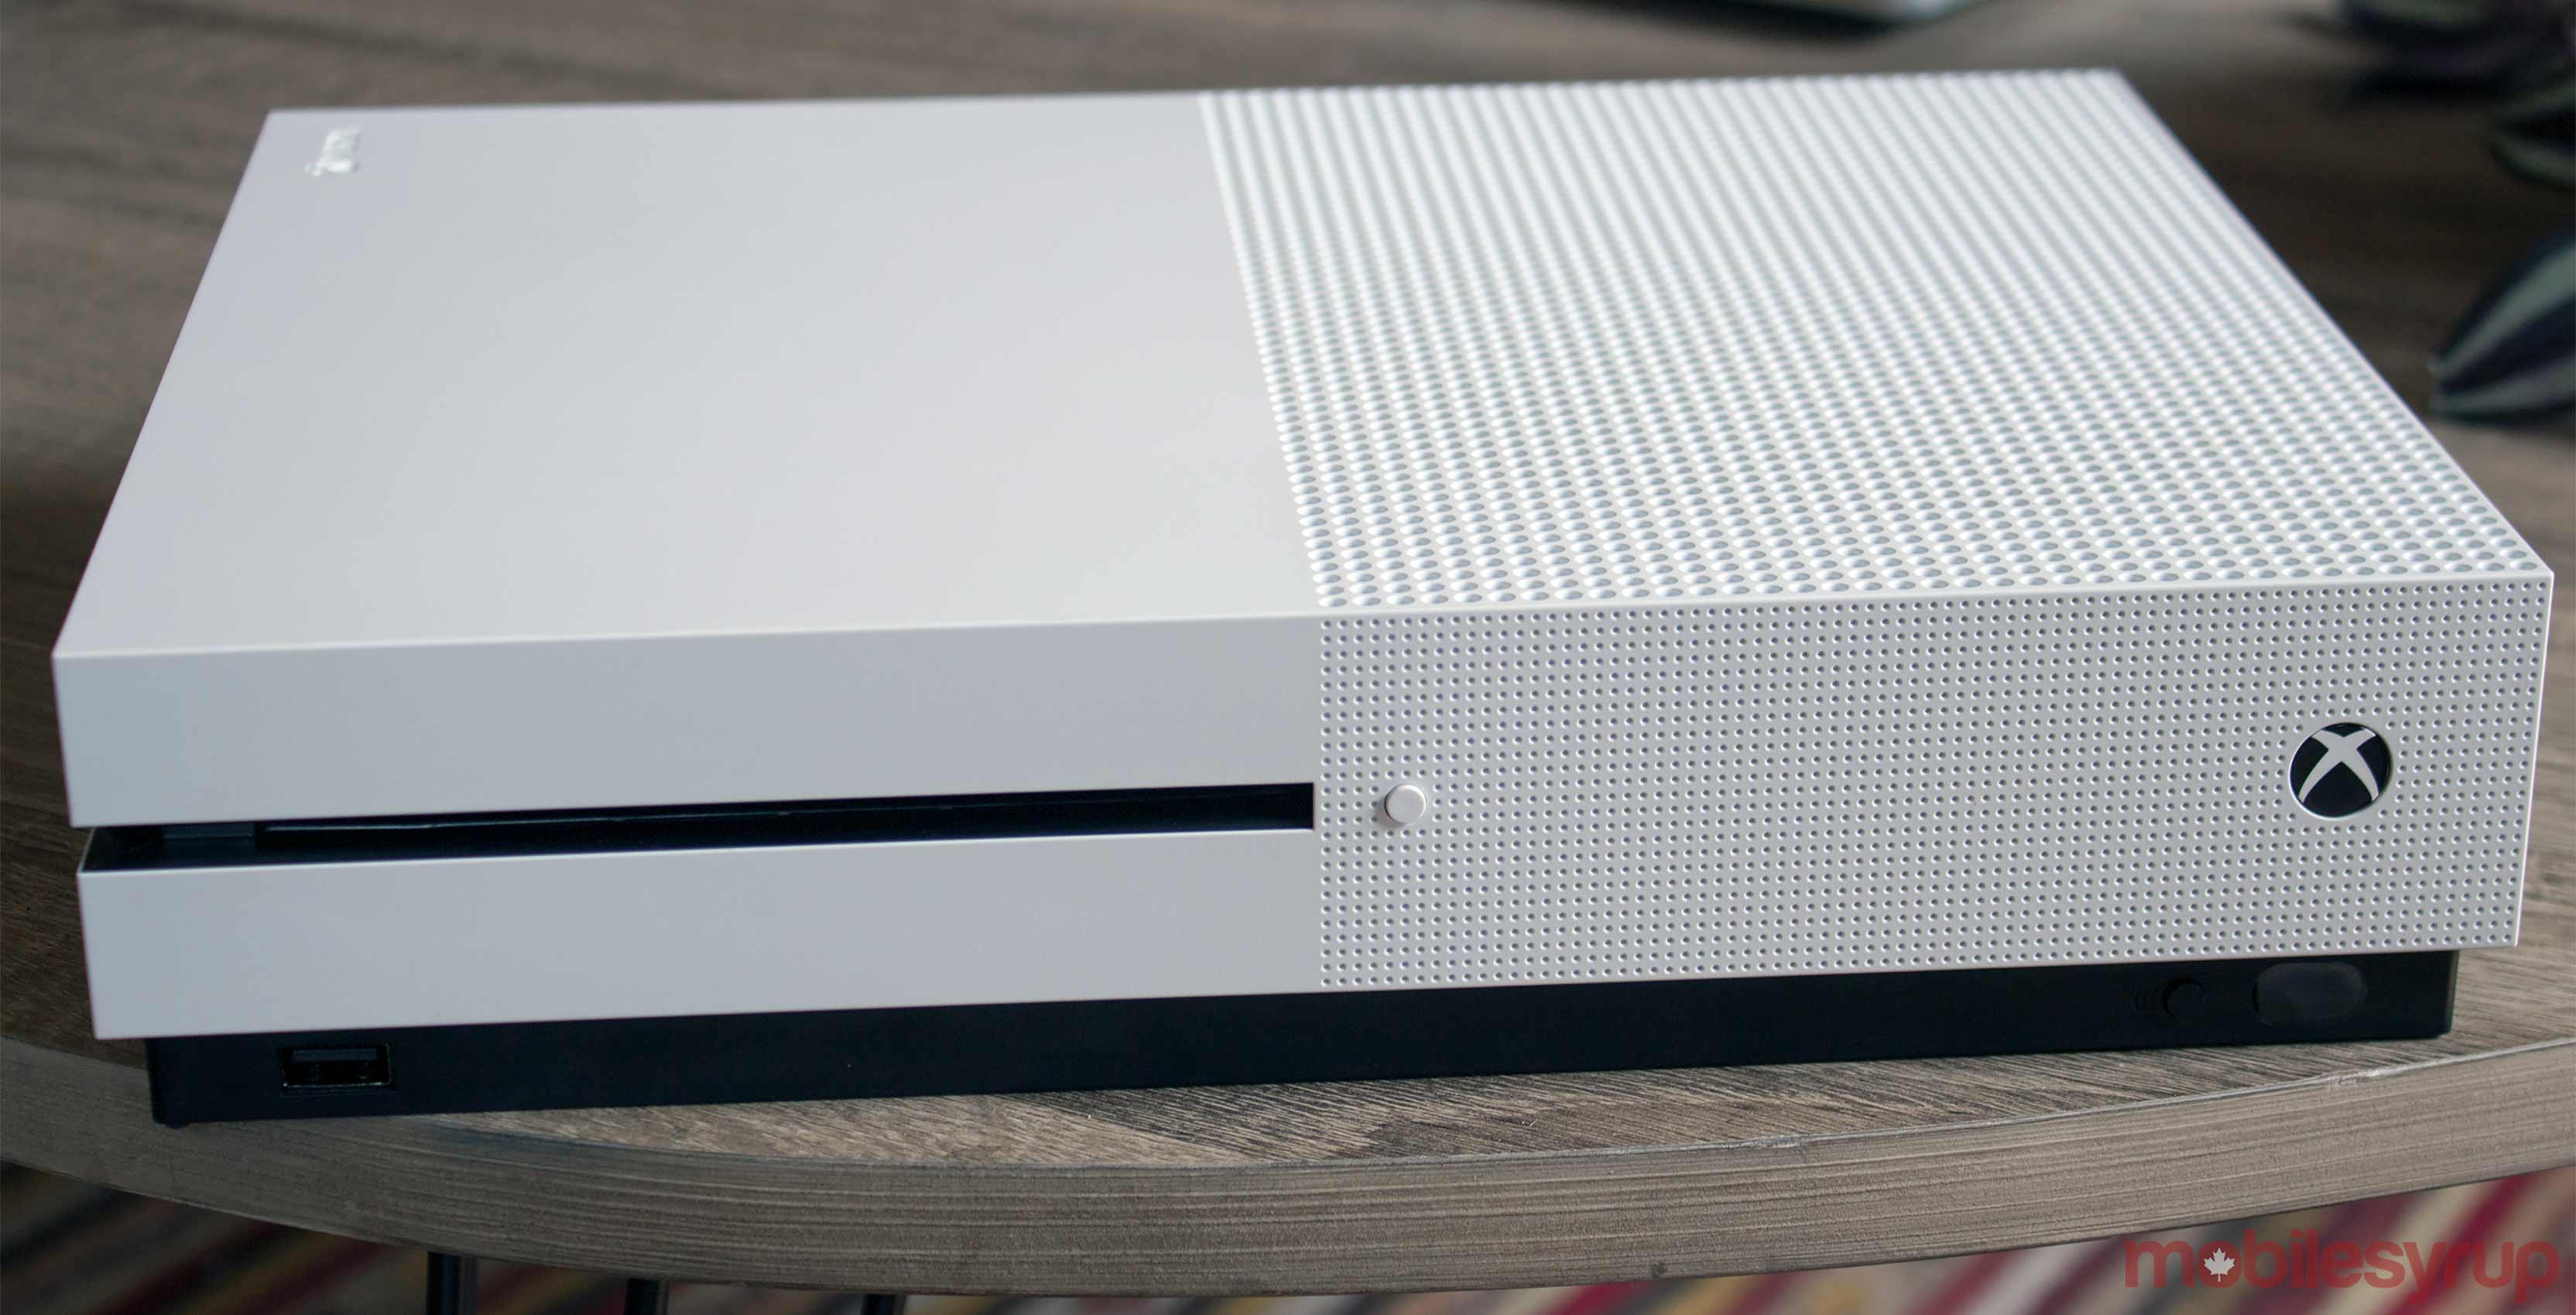 Xbox One S white